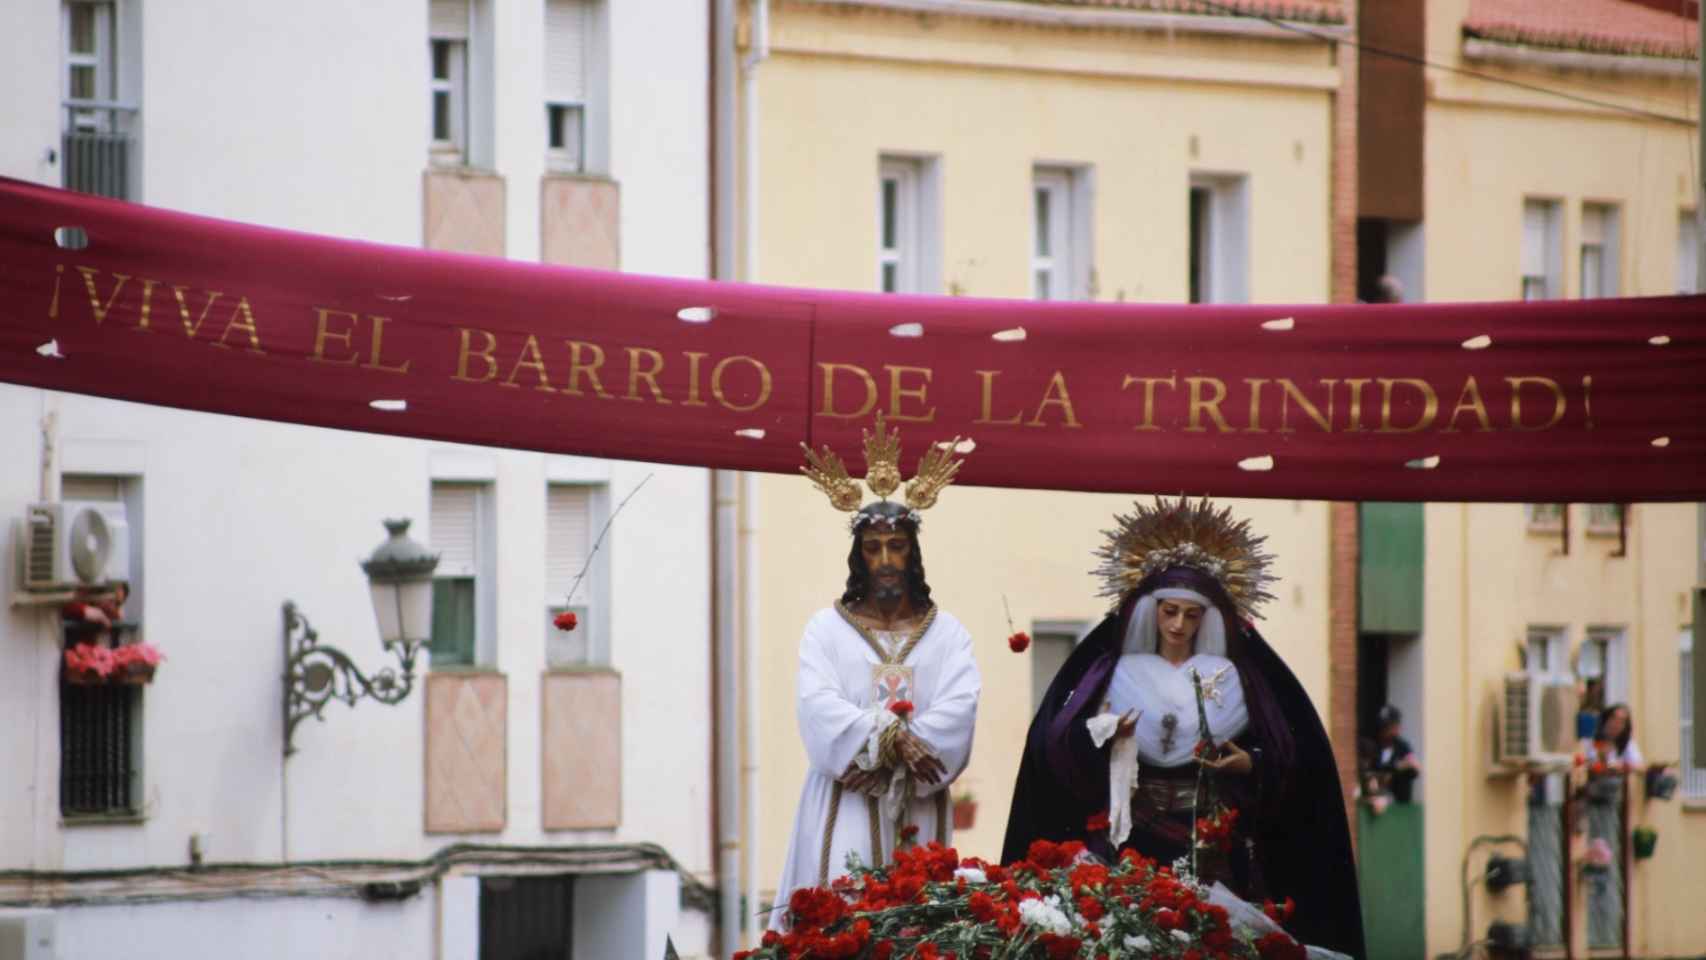 El traslado de Jesús Cautivo y la Virgen de la Trinidad.